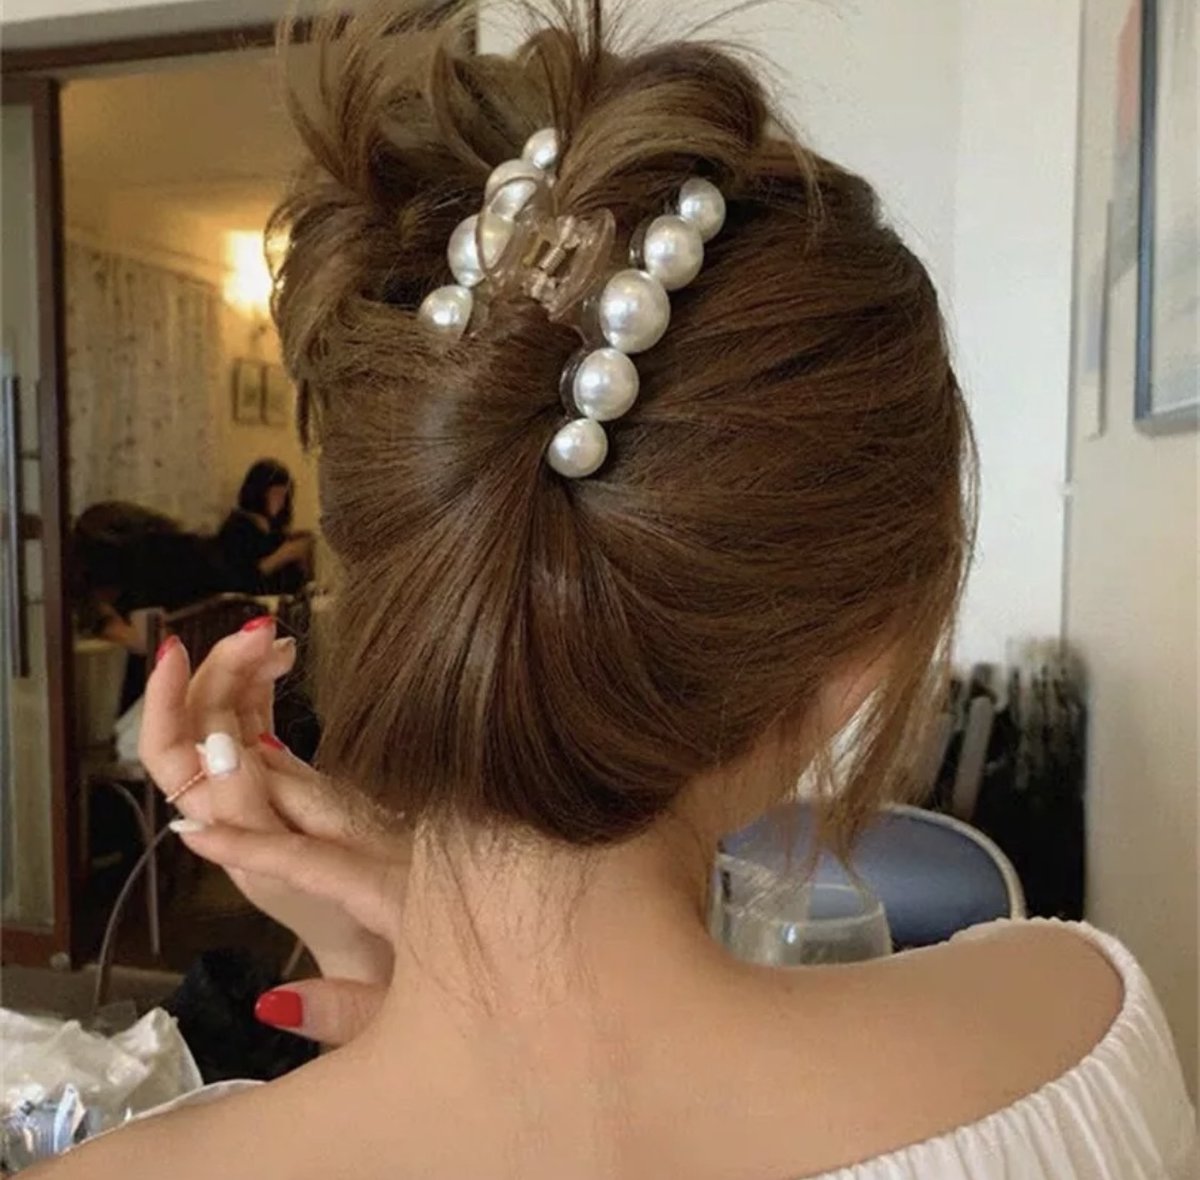 10 Pièces Pinces à Cheveux Perles, Accessoire Cheveux Fille Mini